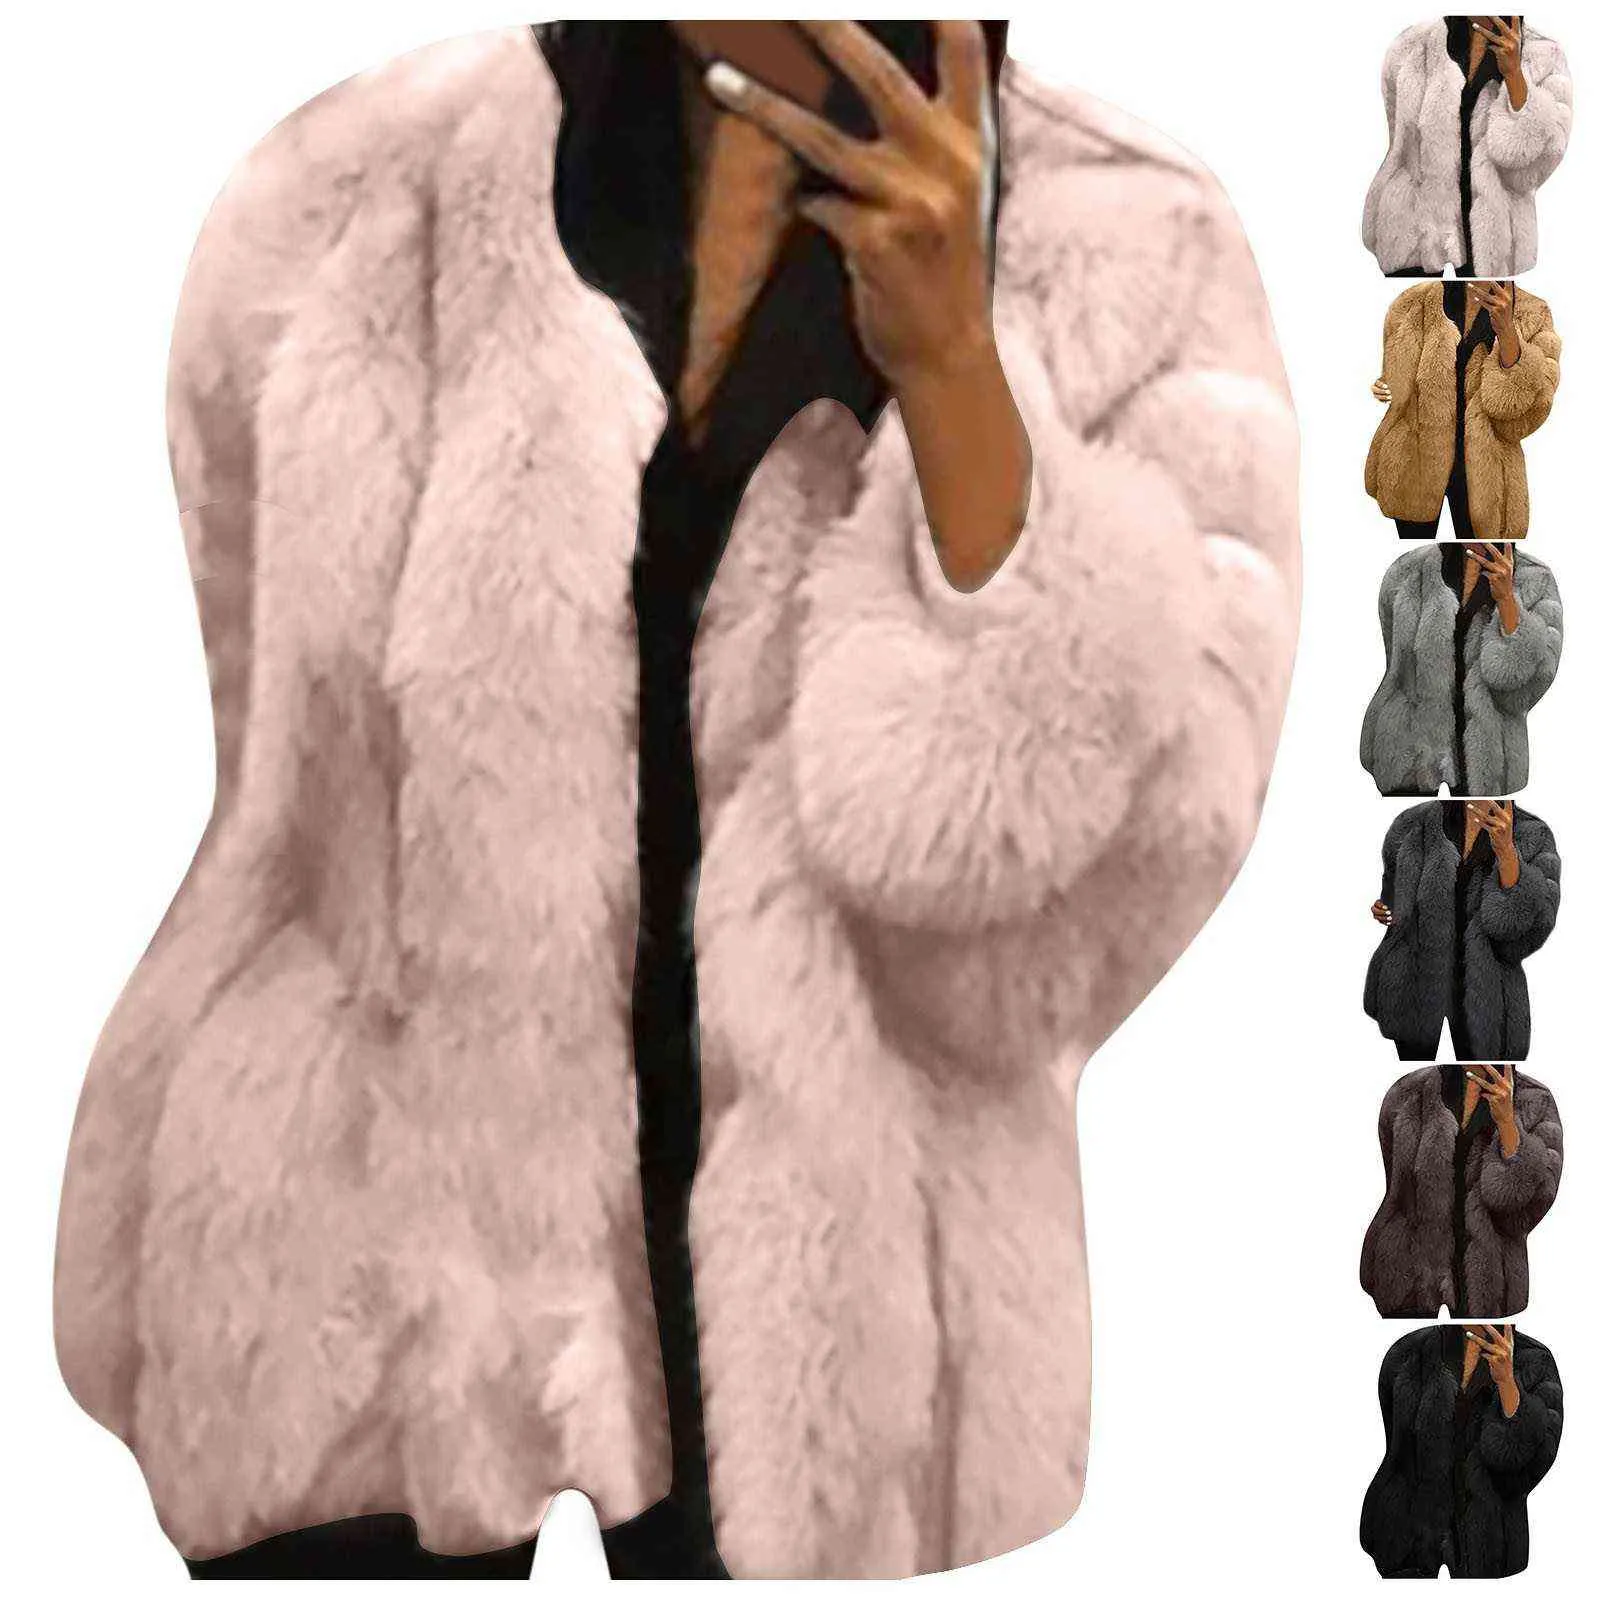 Mode Kvinnors Faux Fur Open Front Cardigan Jacka Vinter Varm Långärmad Plysch Solid Färger Coat Overcoat Chaqueta Mujer # G3 211110